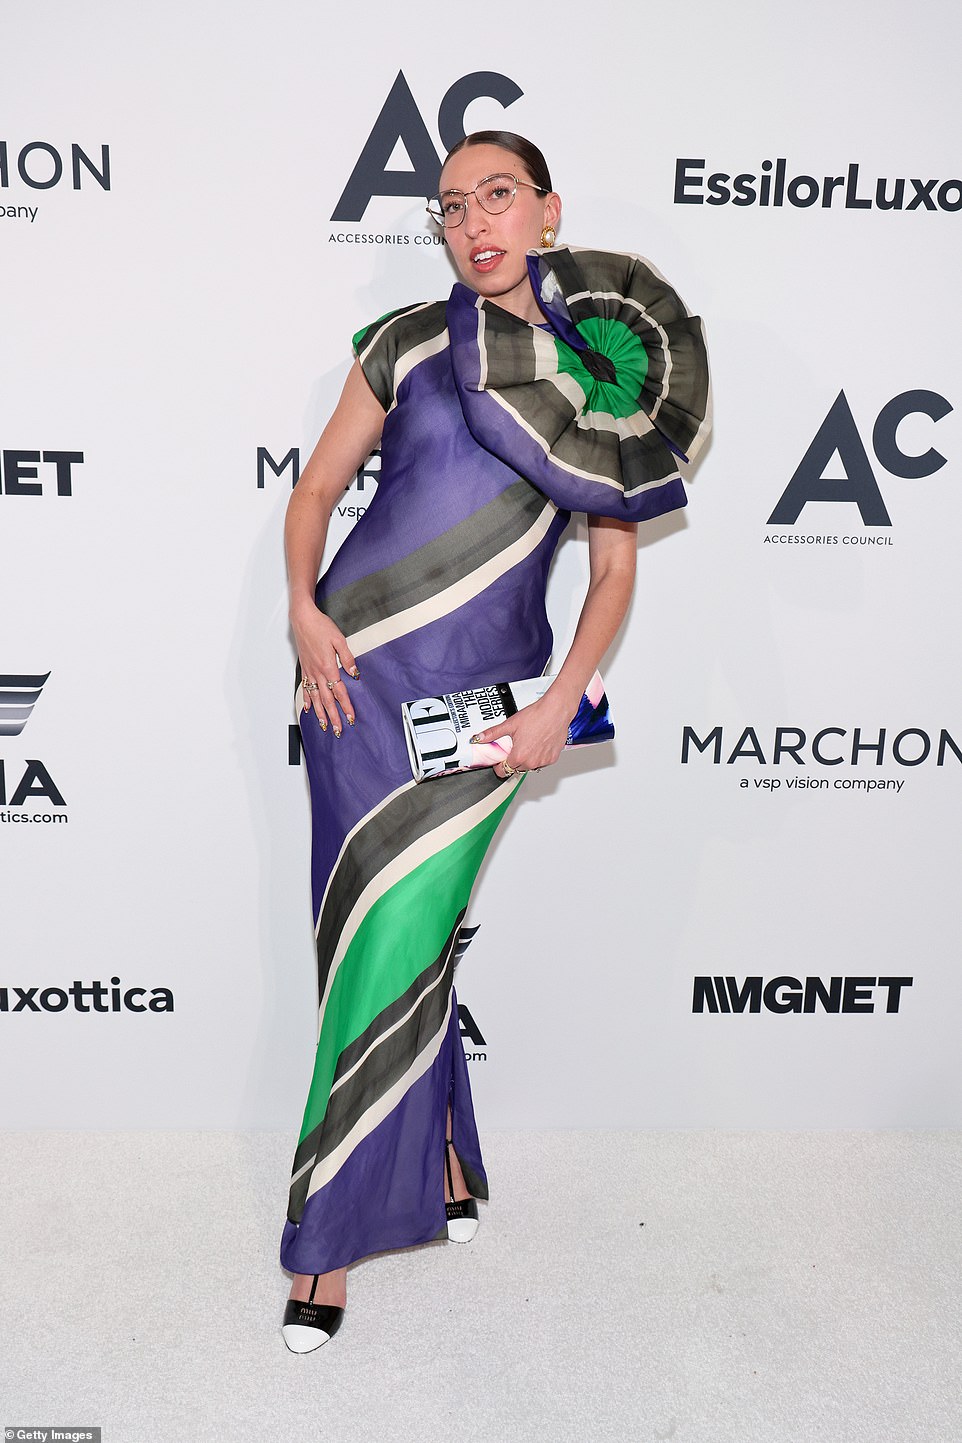 Стилист Кэролайн Ваззана поразила ярким платьем ярких оттенков зеленого и фиолетового.